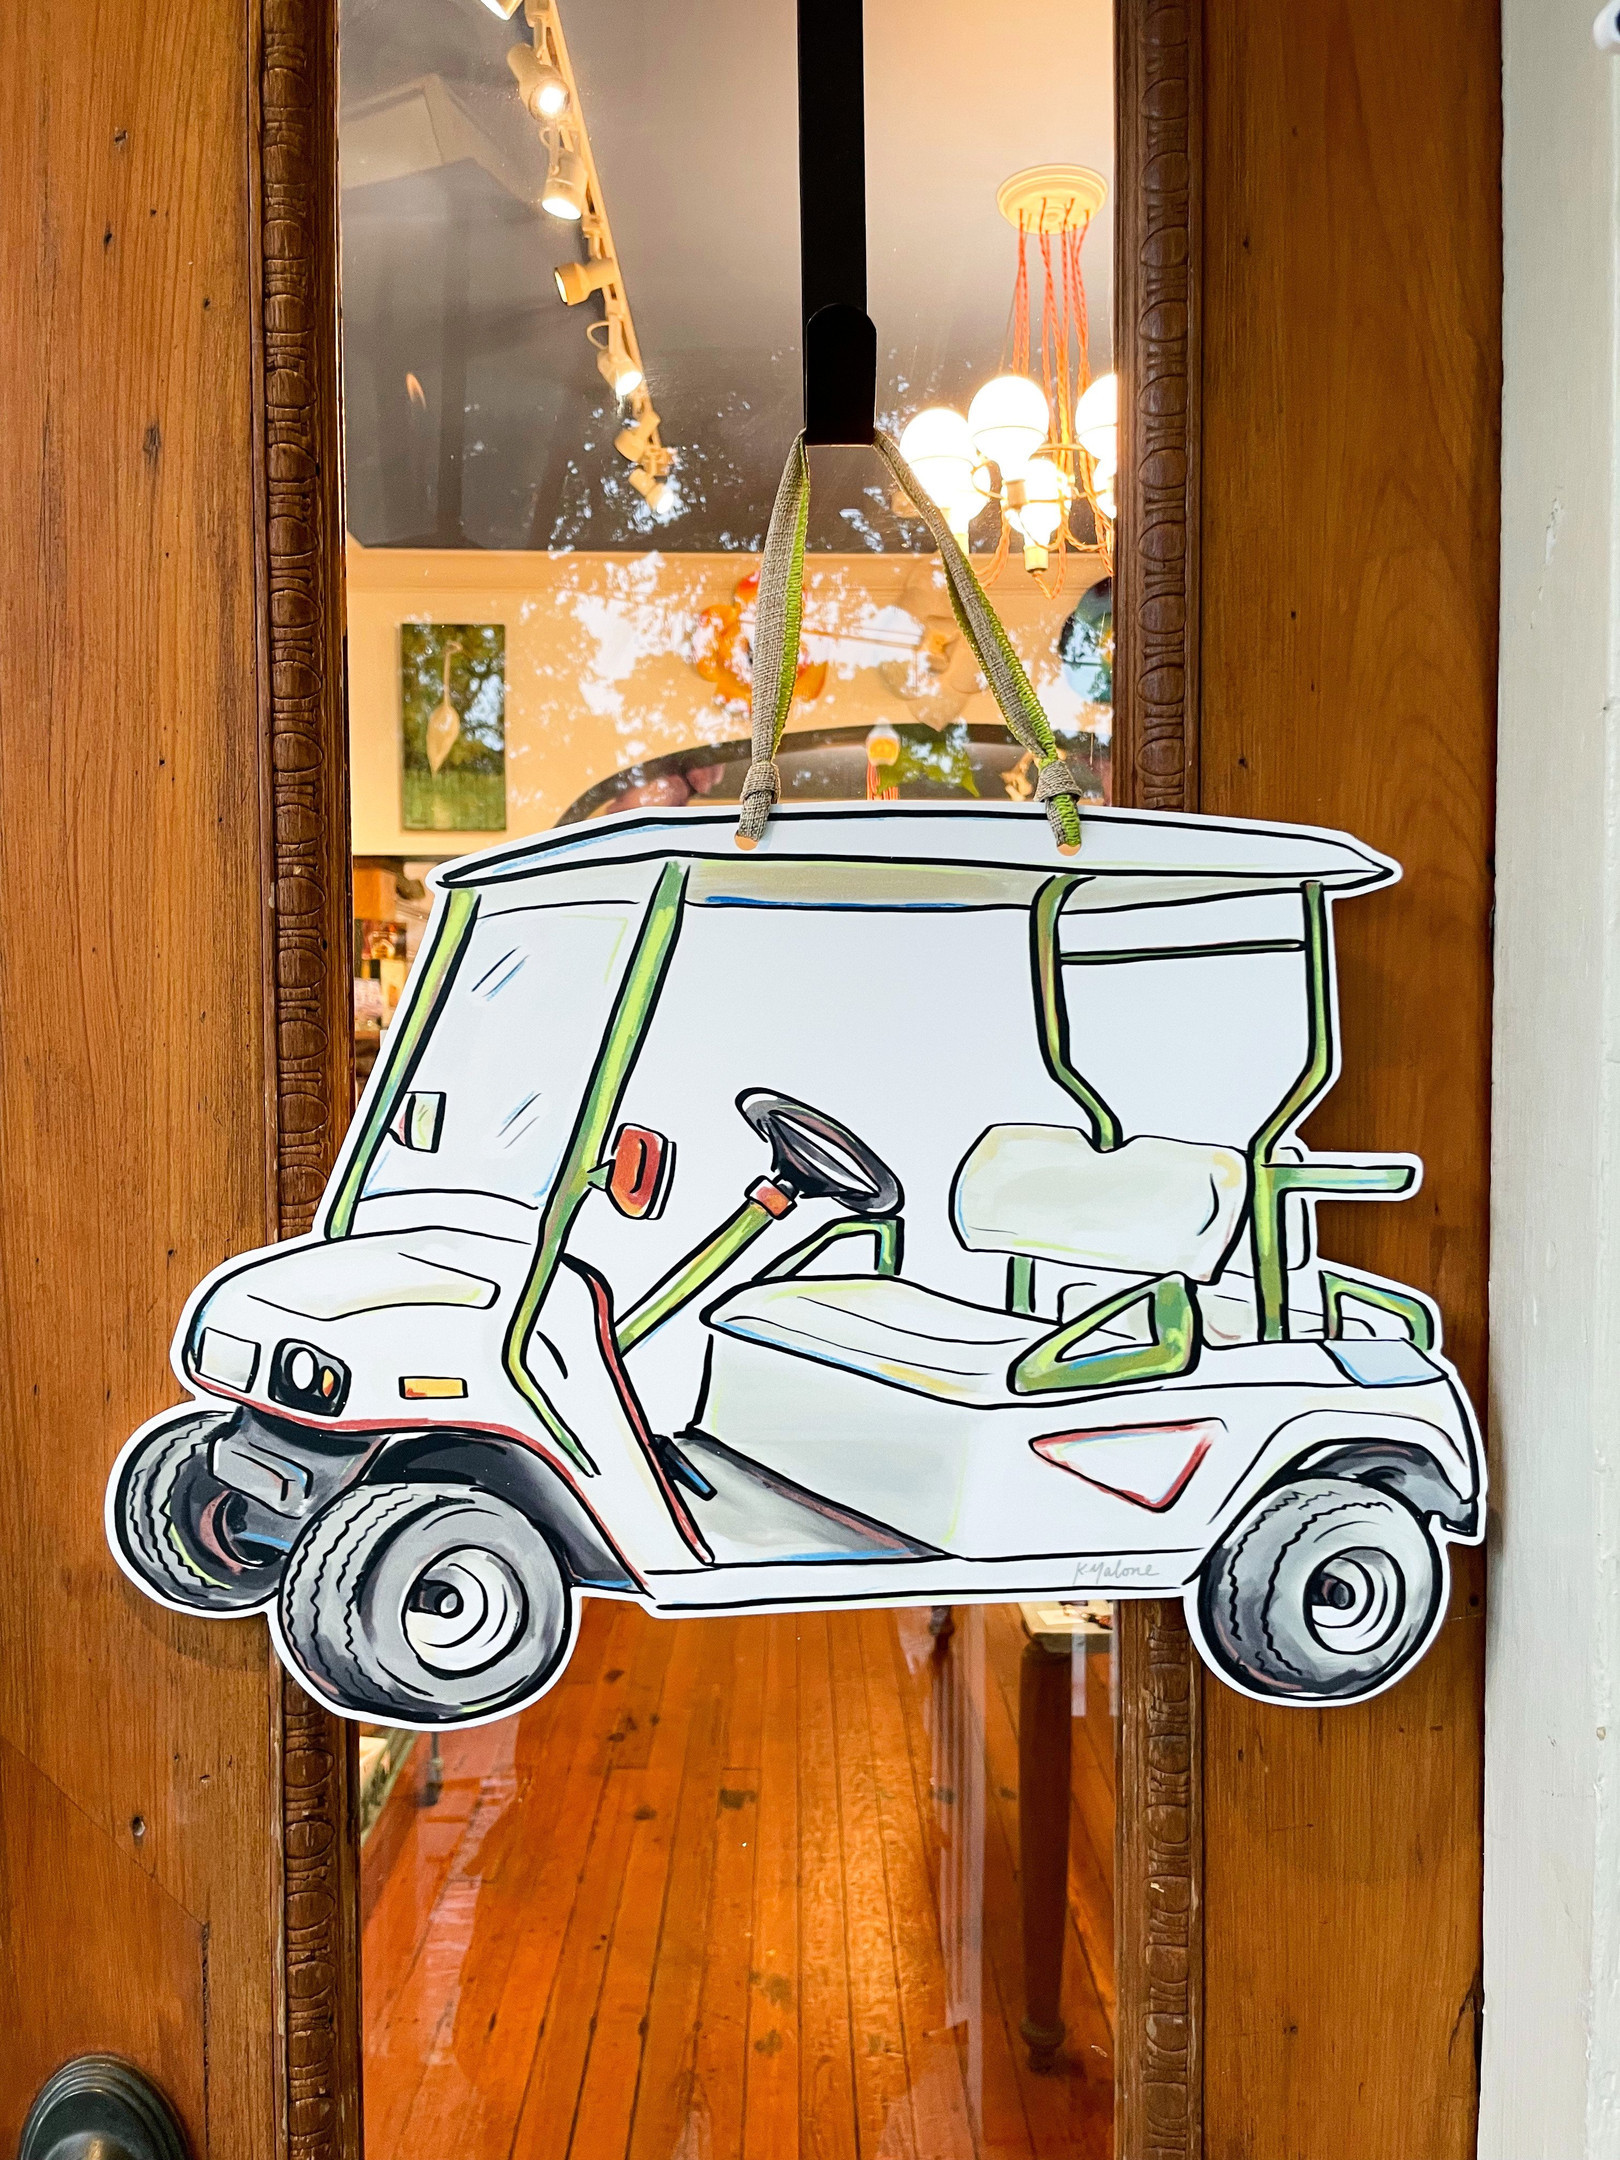 The Design Of Golf Cart Wooden Custom Door Sign Home Decor